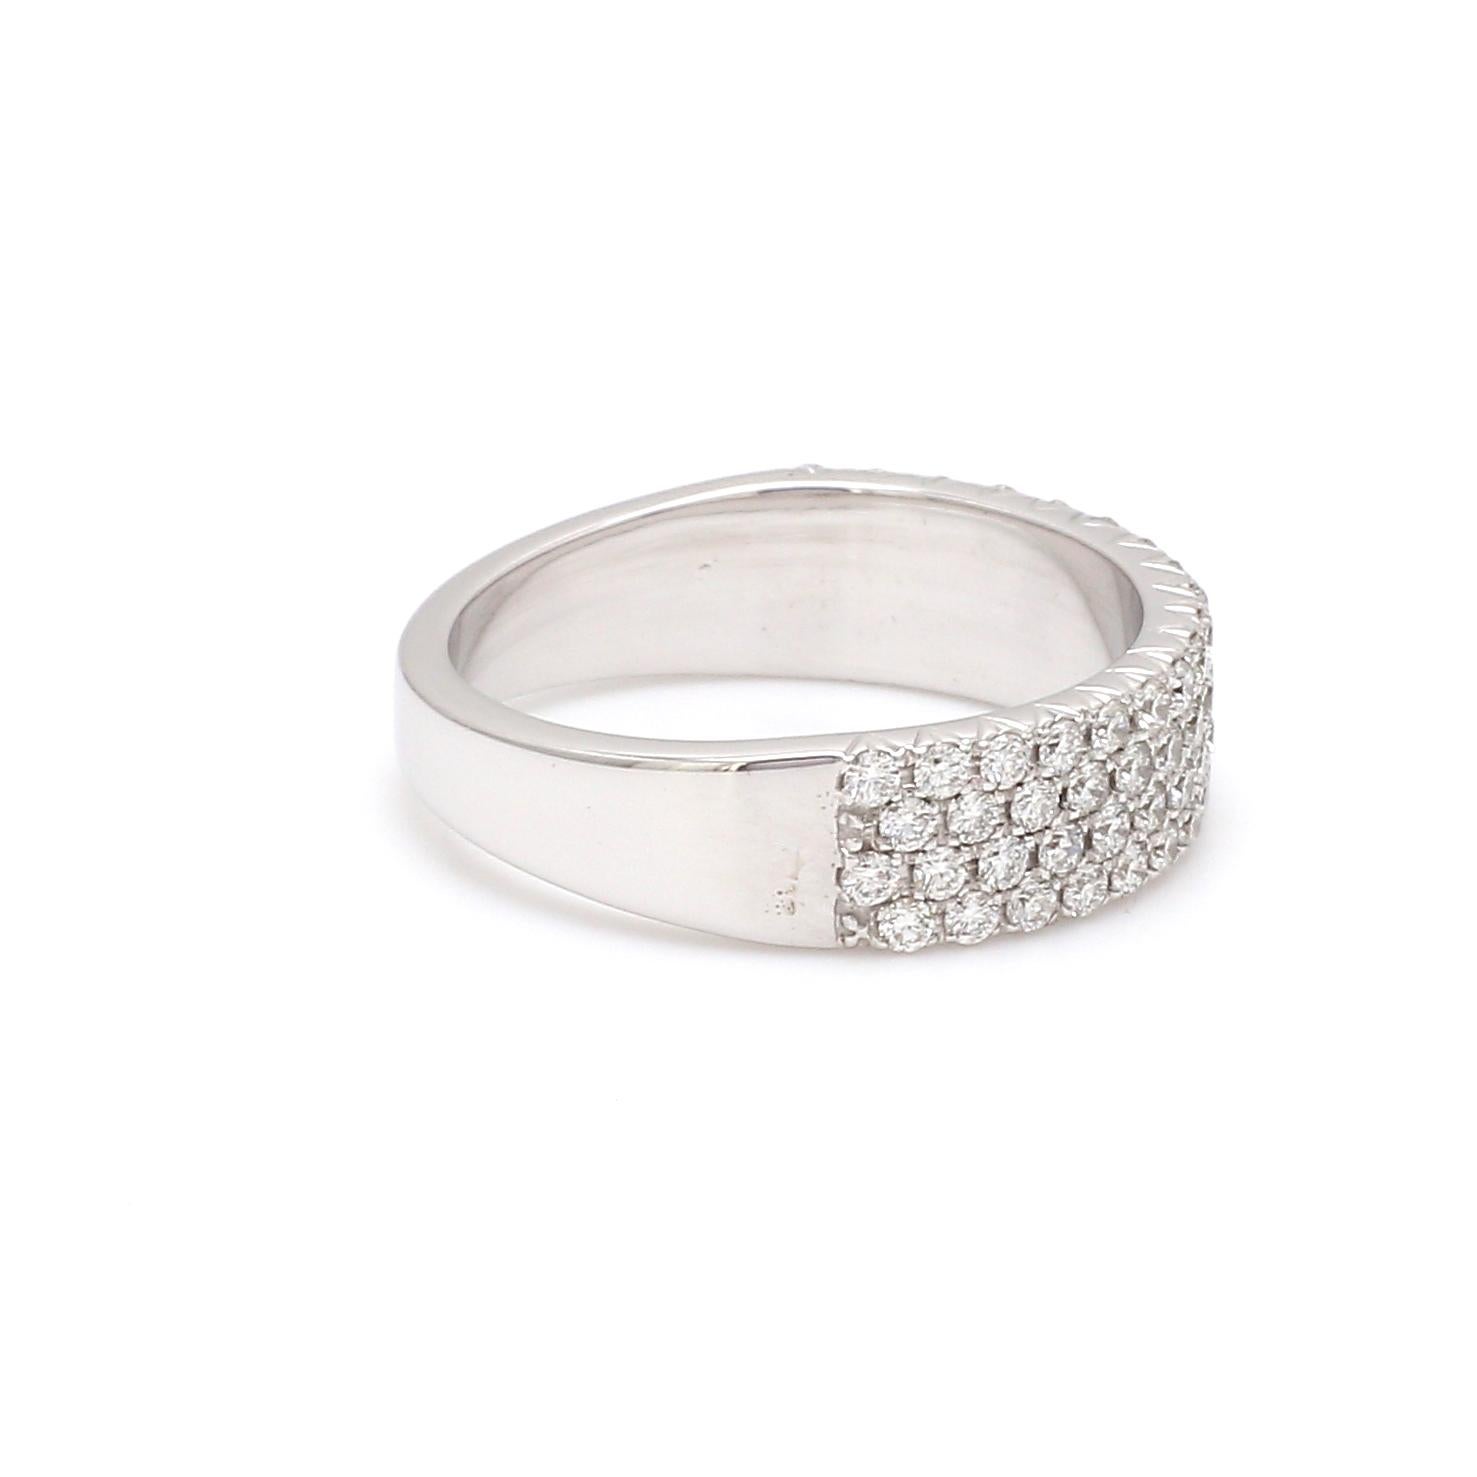 Round Cut Round Brilliant Cut Diamond 18 Karat White Gold Wedding Ring For Sale